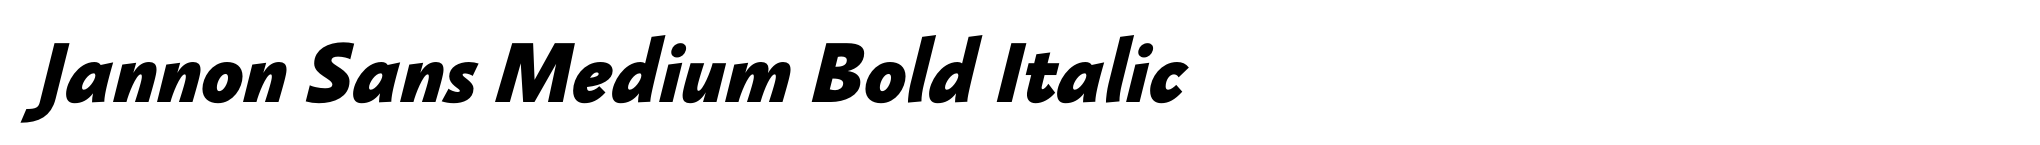 Jannon Sans Medium Bold Italic image